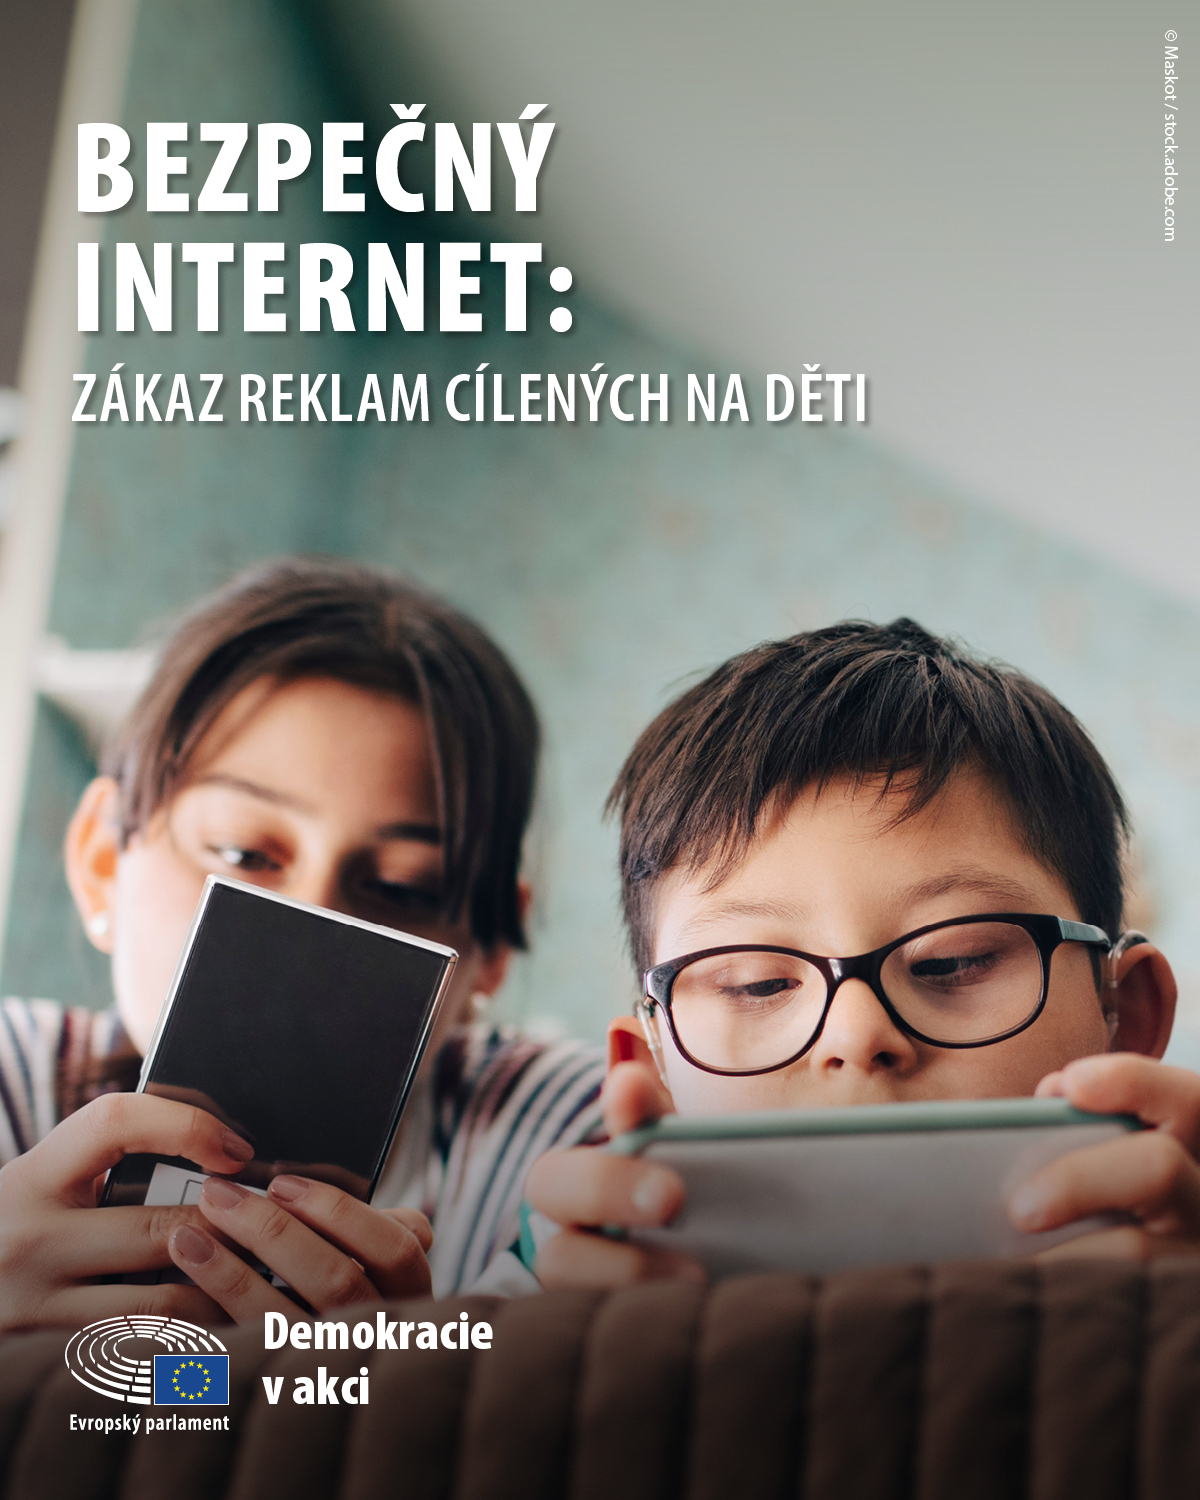 Safe Internet - 4:5.jpg